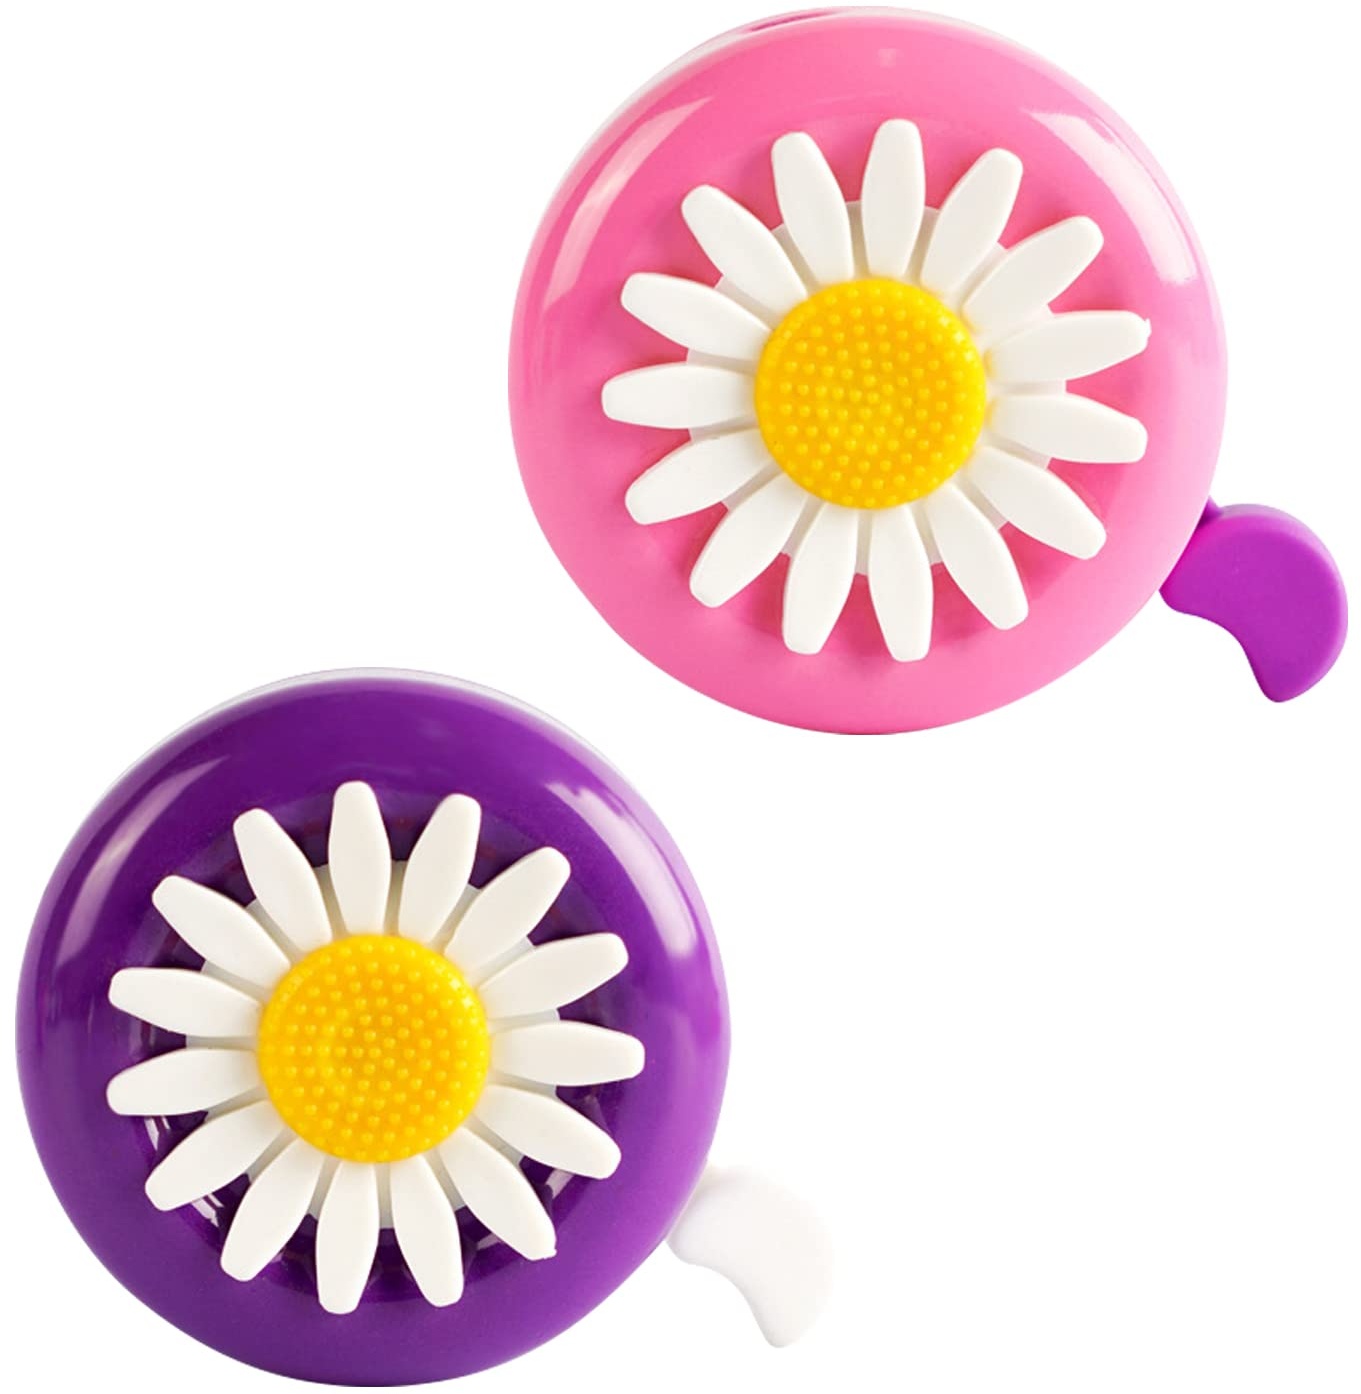 PFLYPF 2 stück Kinderfahrradklingeln, Blumenfahrradklingeln, süße Kleinkinderklingeln, geeignet für Jungen und Mädchen, ideales Zubehör für Kinderfahrräder (lila, pink)